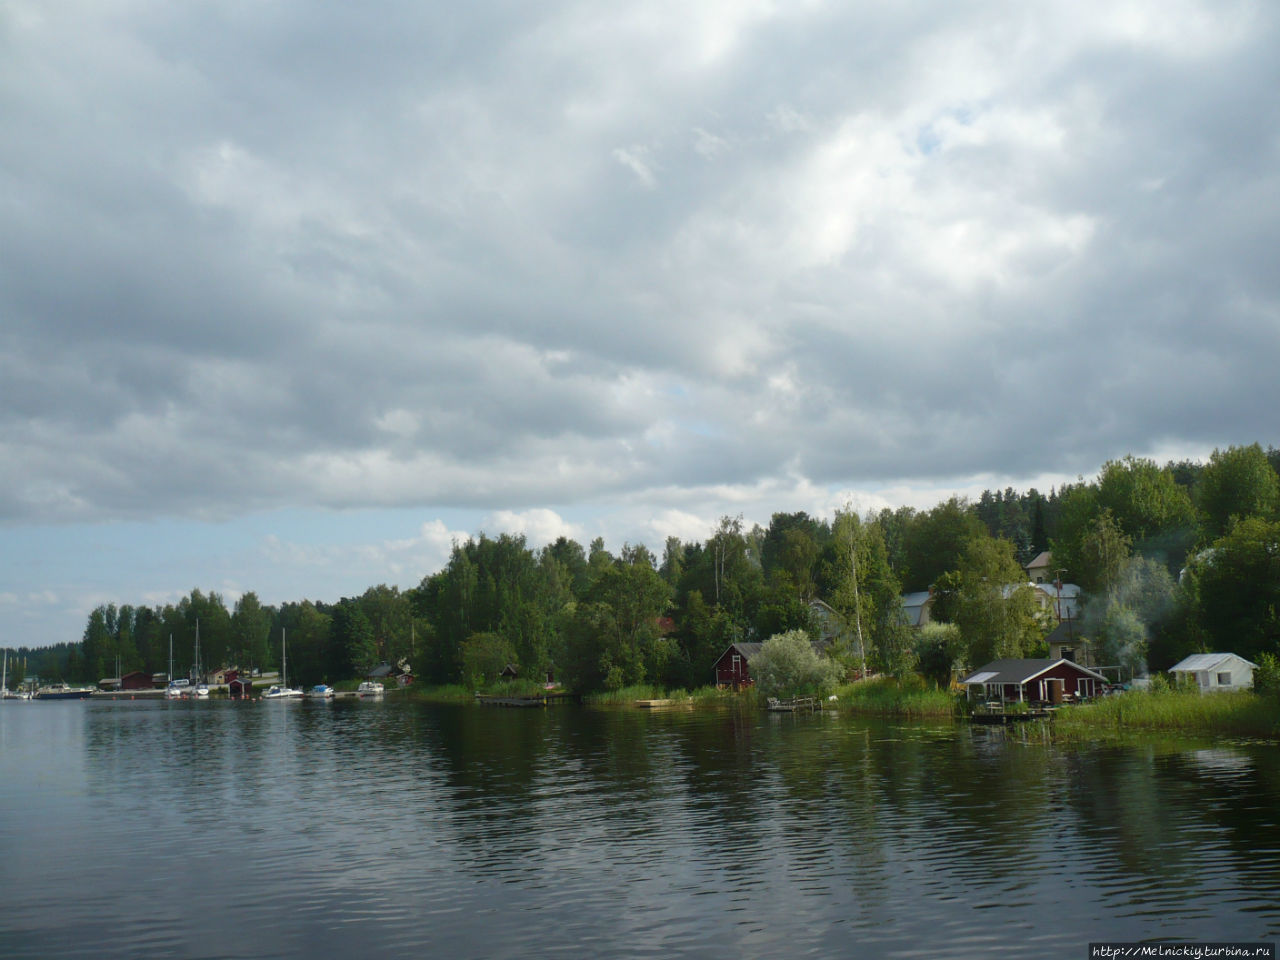 Небольшая прогулка по поселку гребцов Сулкава, Финляндия